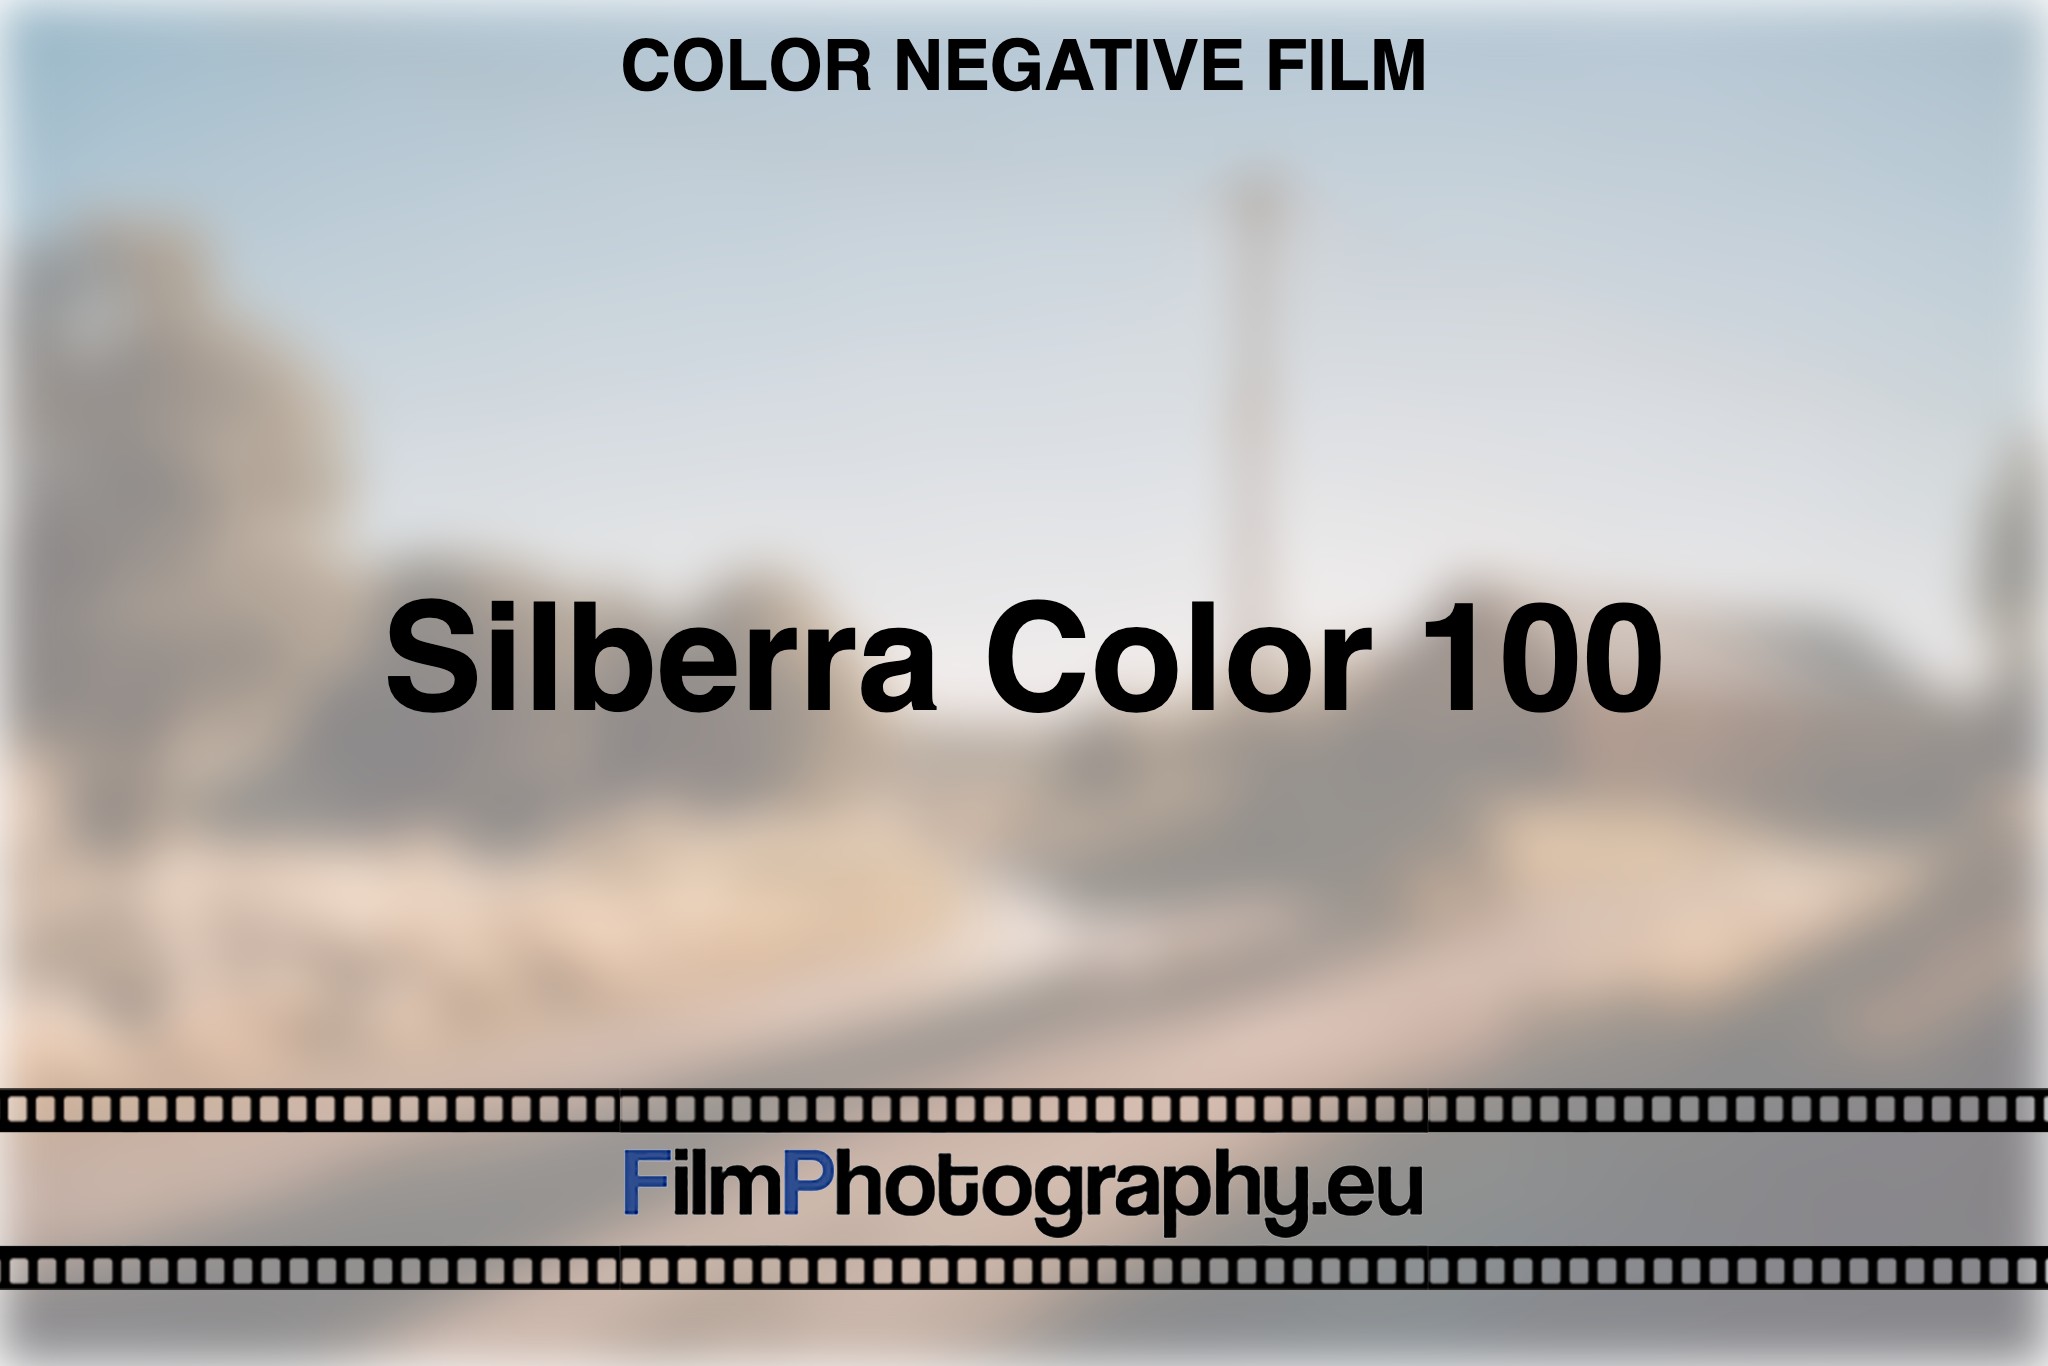 silberra-color-100-color-negative-film-bnv